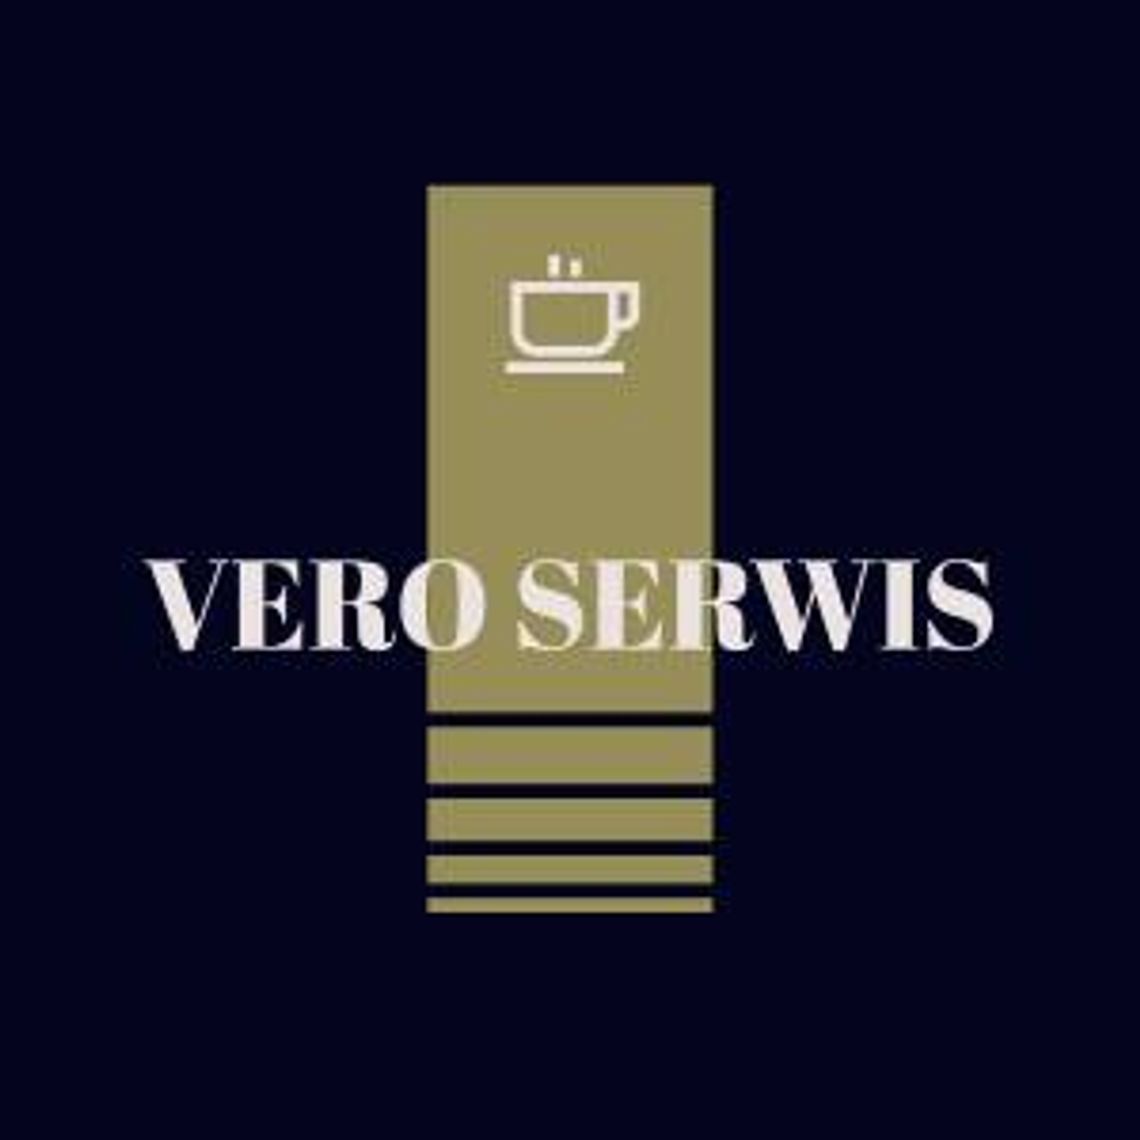 Diagnozowana sprawności układu zaparzania kawy - Vero Serwis